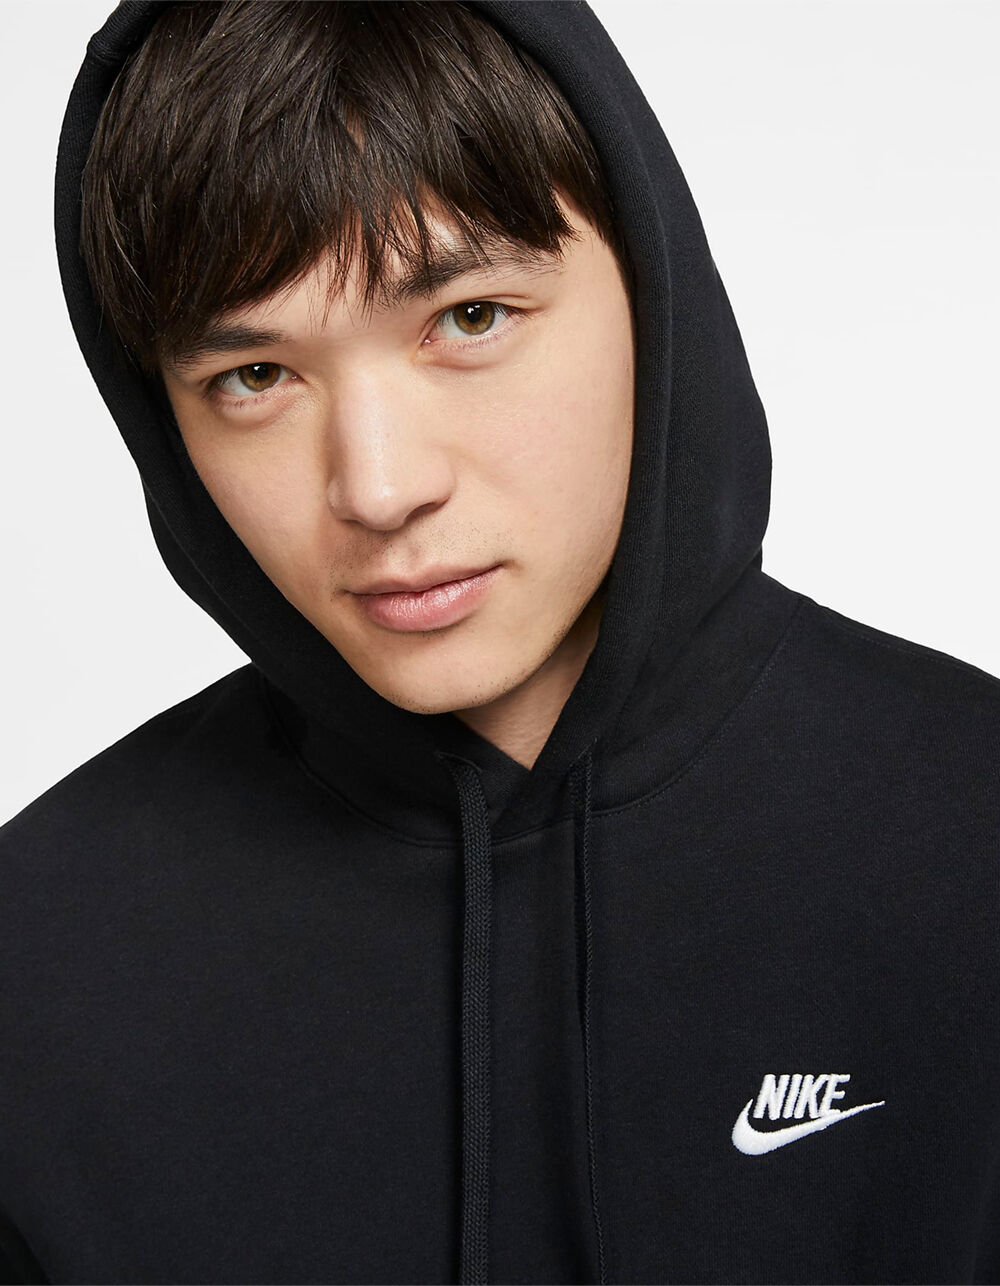 Nike Sportswear Club Fleece Pullover Hoodie